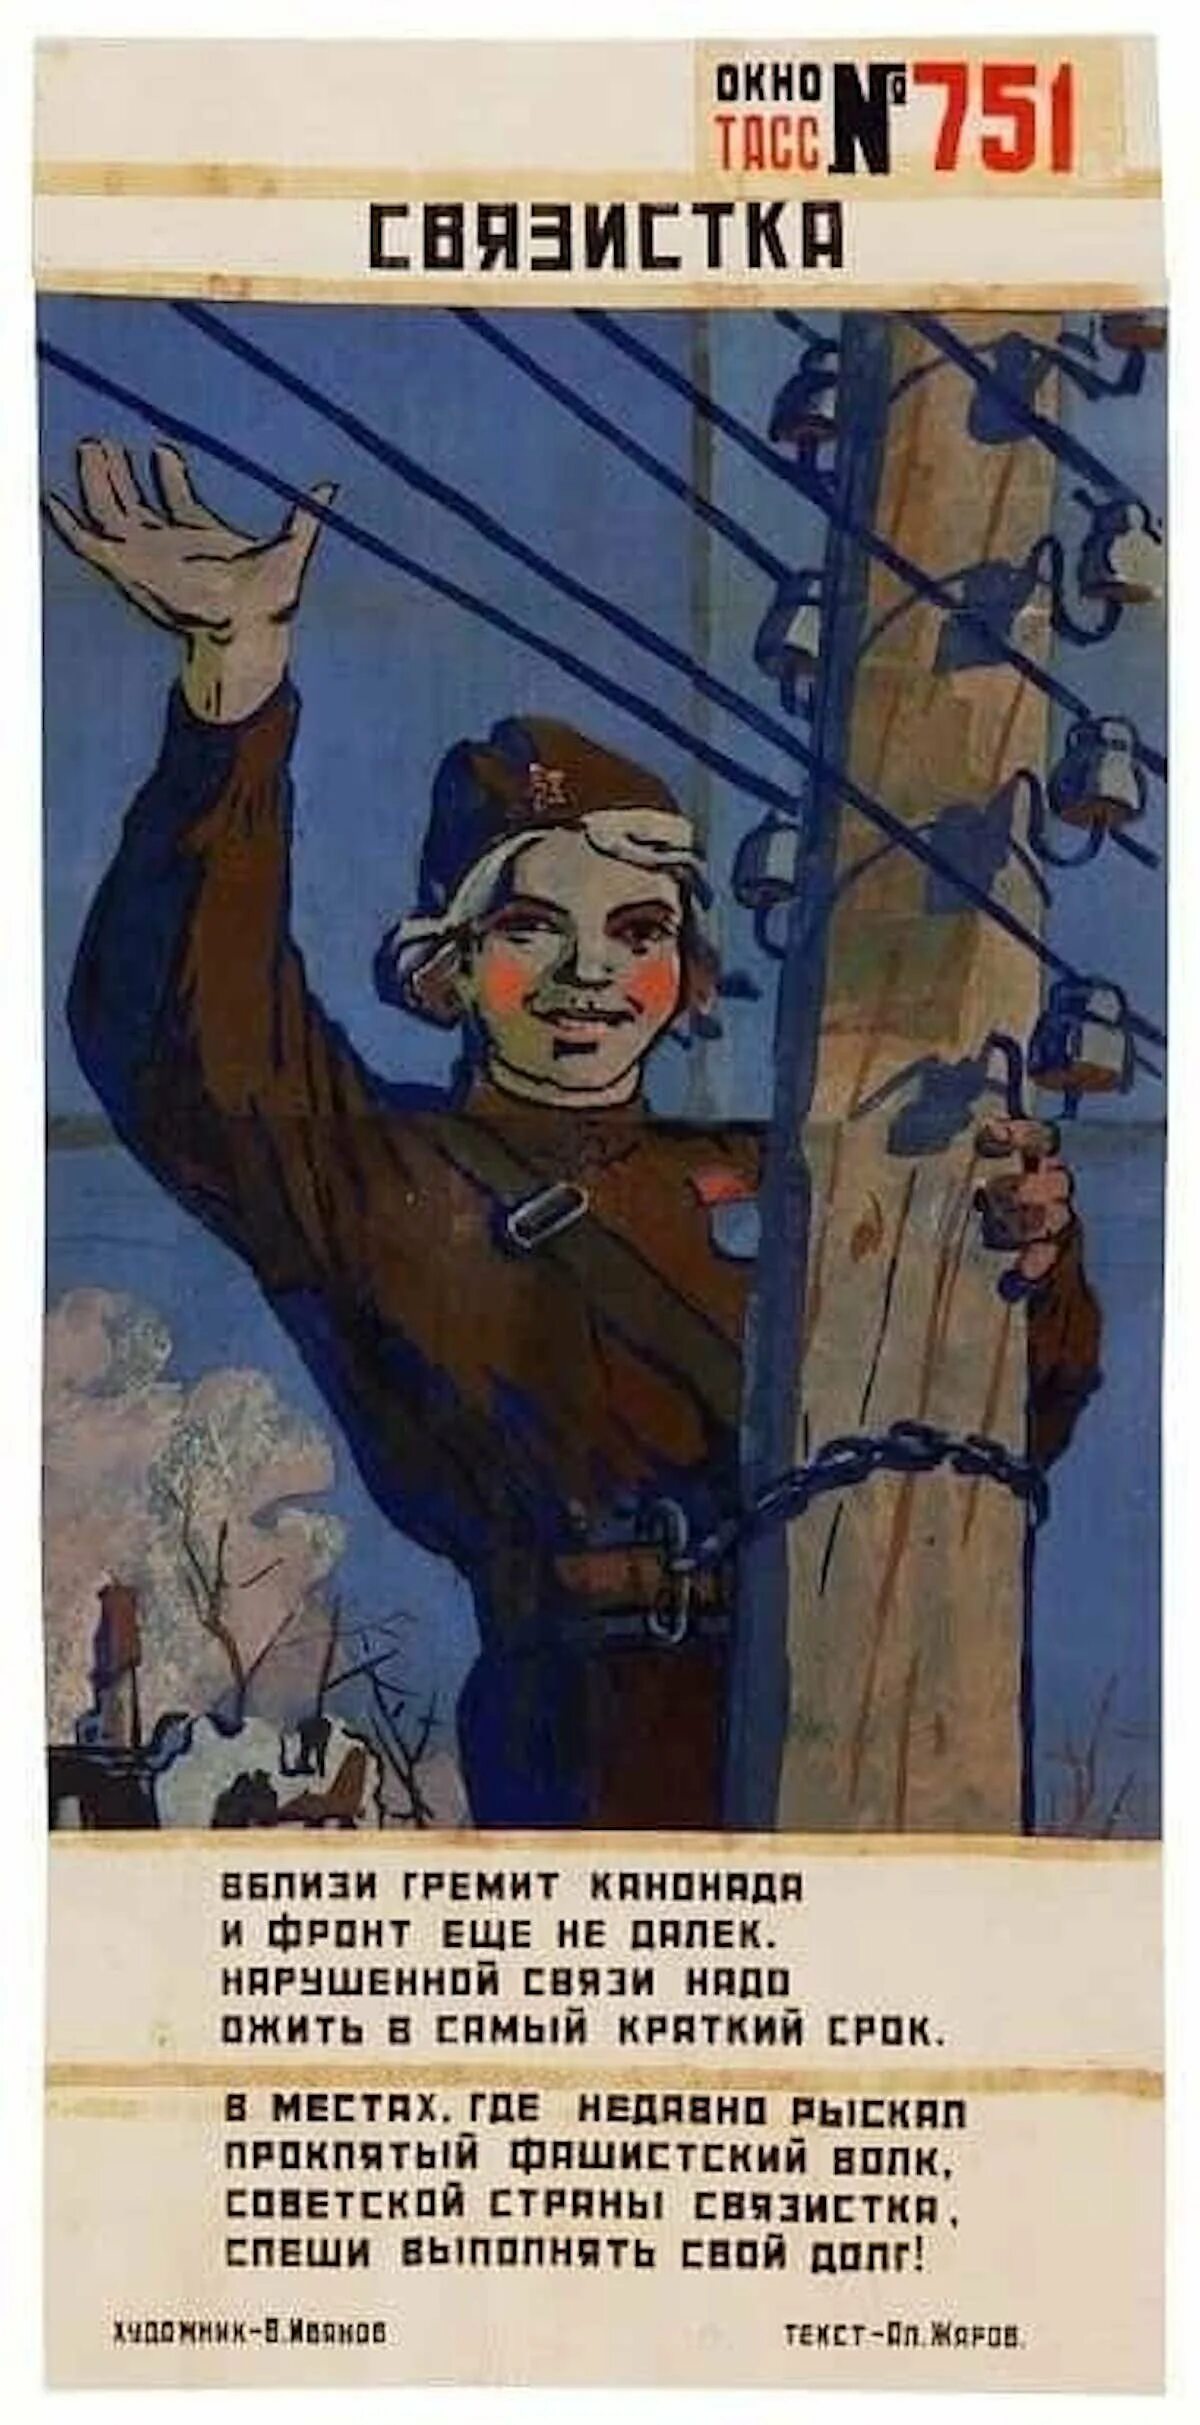 Связистка астафьев краткое. Советские военные плакаты. Советские плакаты про связистов. Советские плакаты про войну. Советские плакаты про армию.